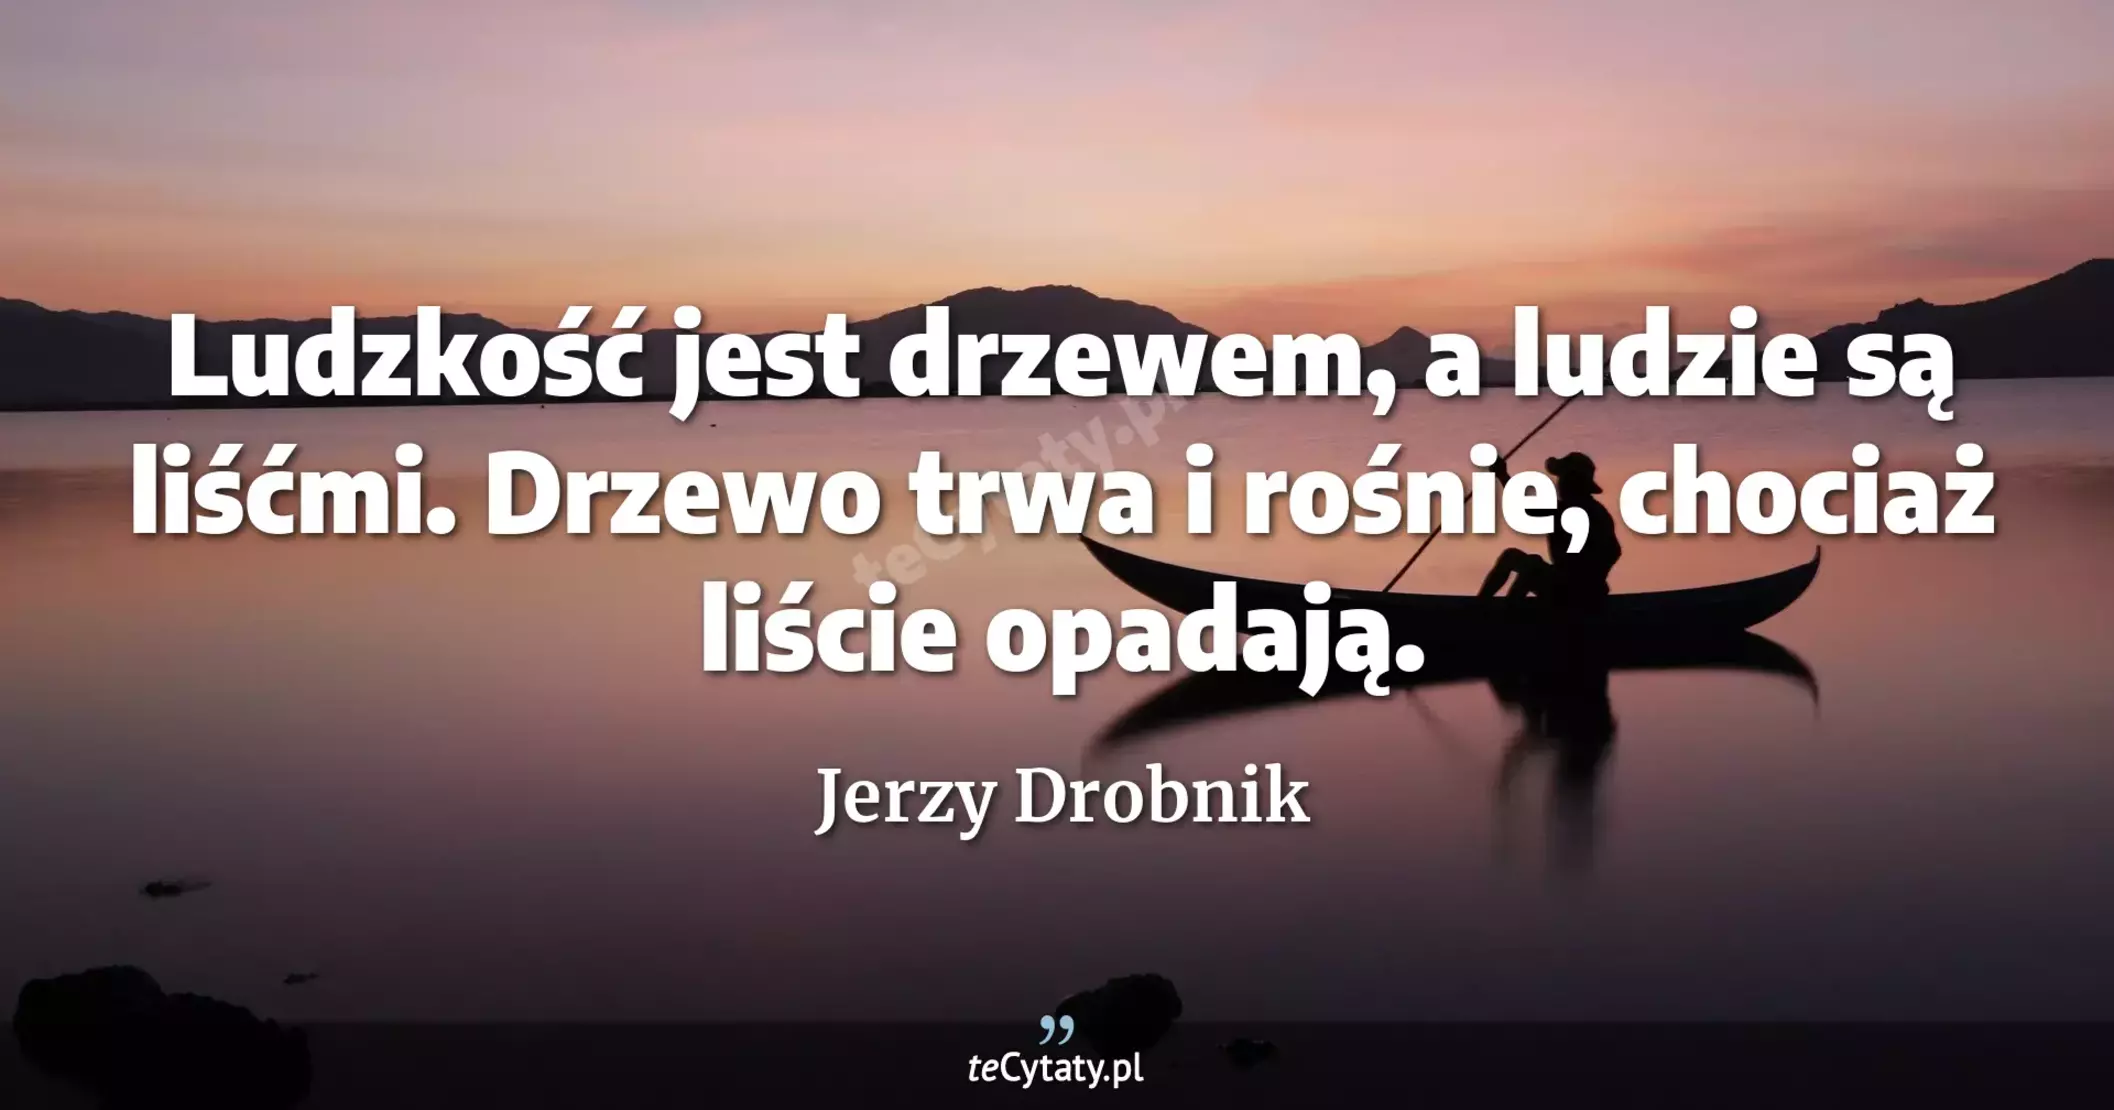 Ludzkość jest drzewem, a ludzie są liśćmi. Drzewo trwa i rośnie, chociaż liście opadają. - Jerzy Drobnik